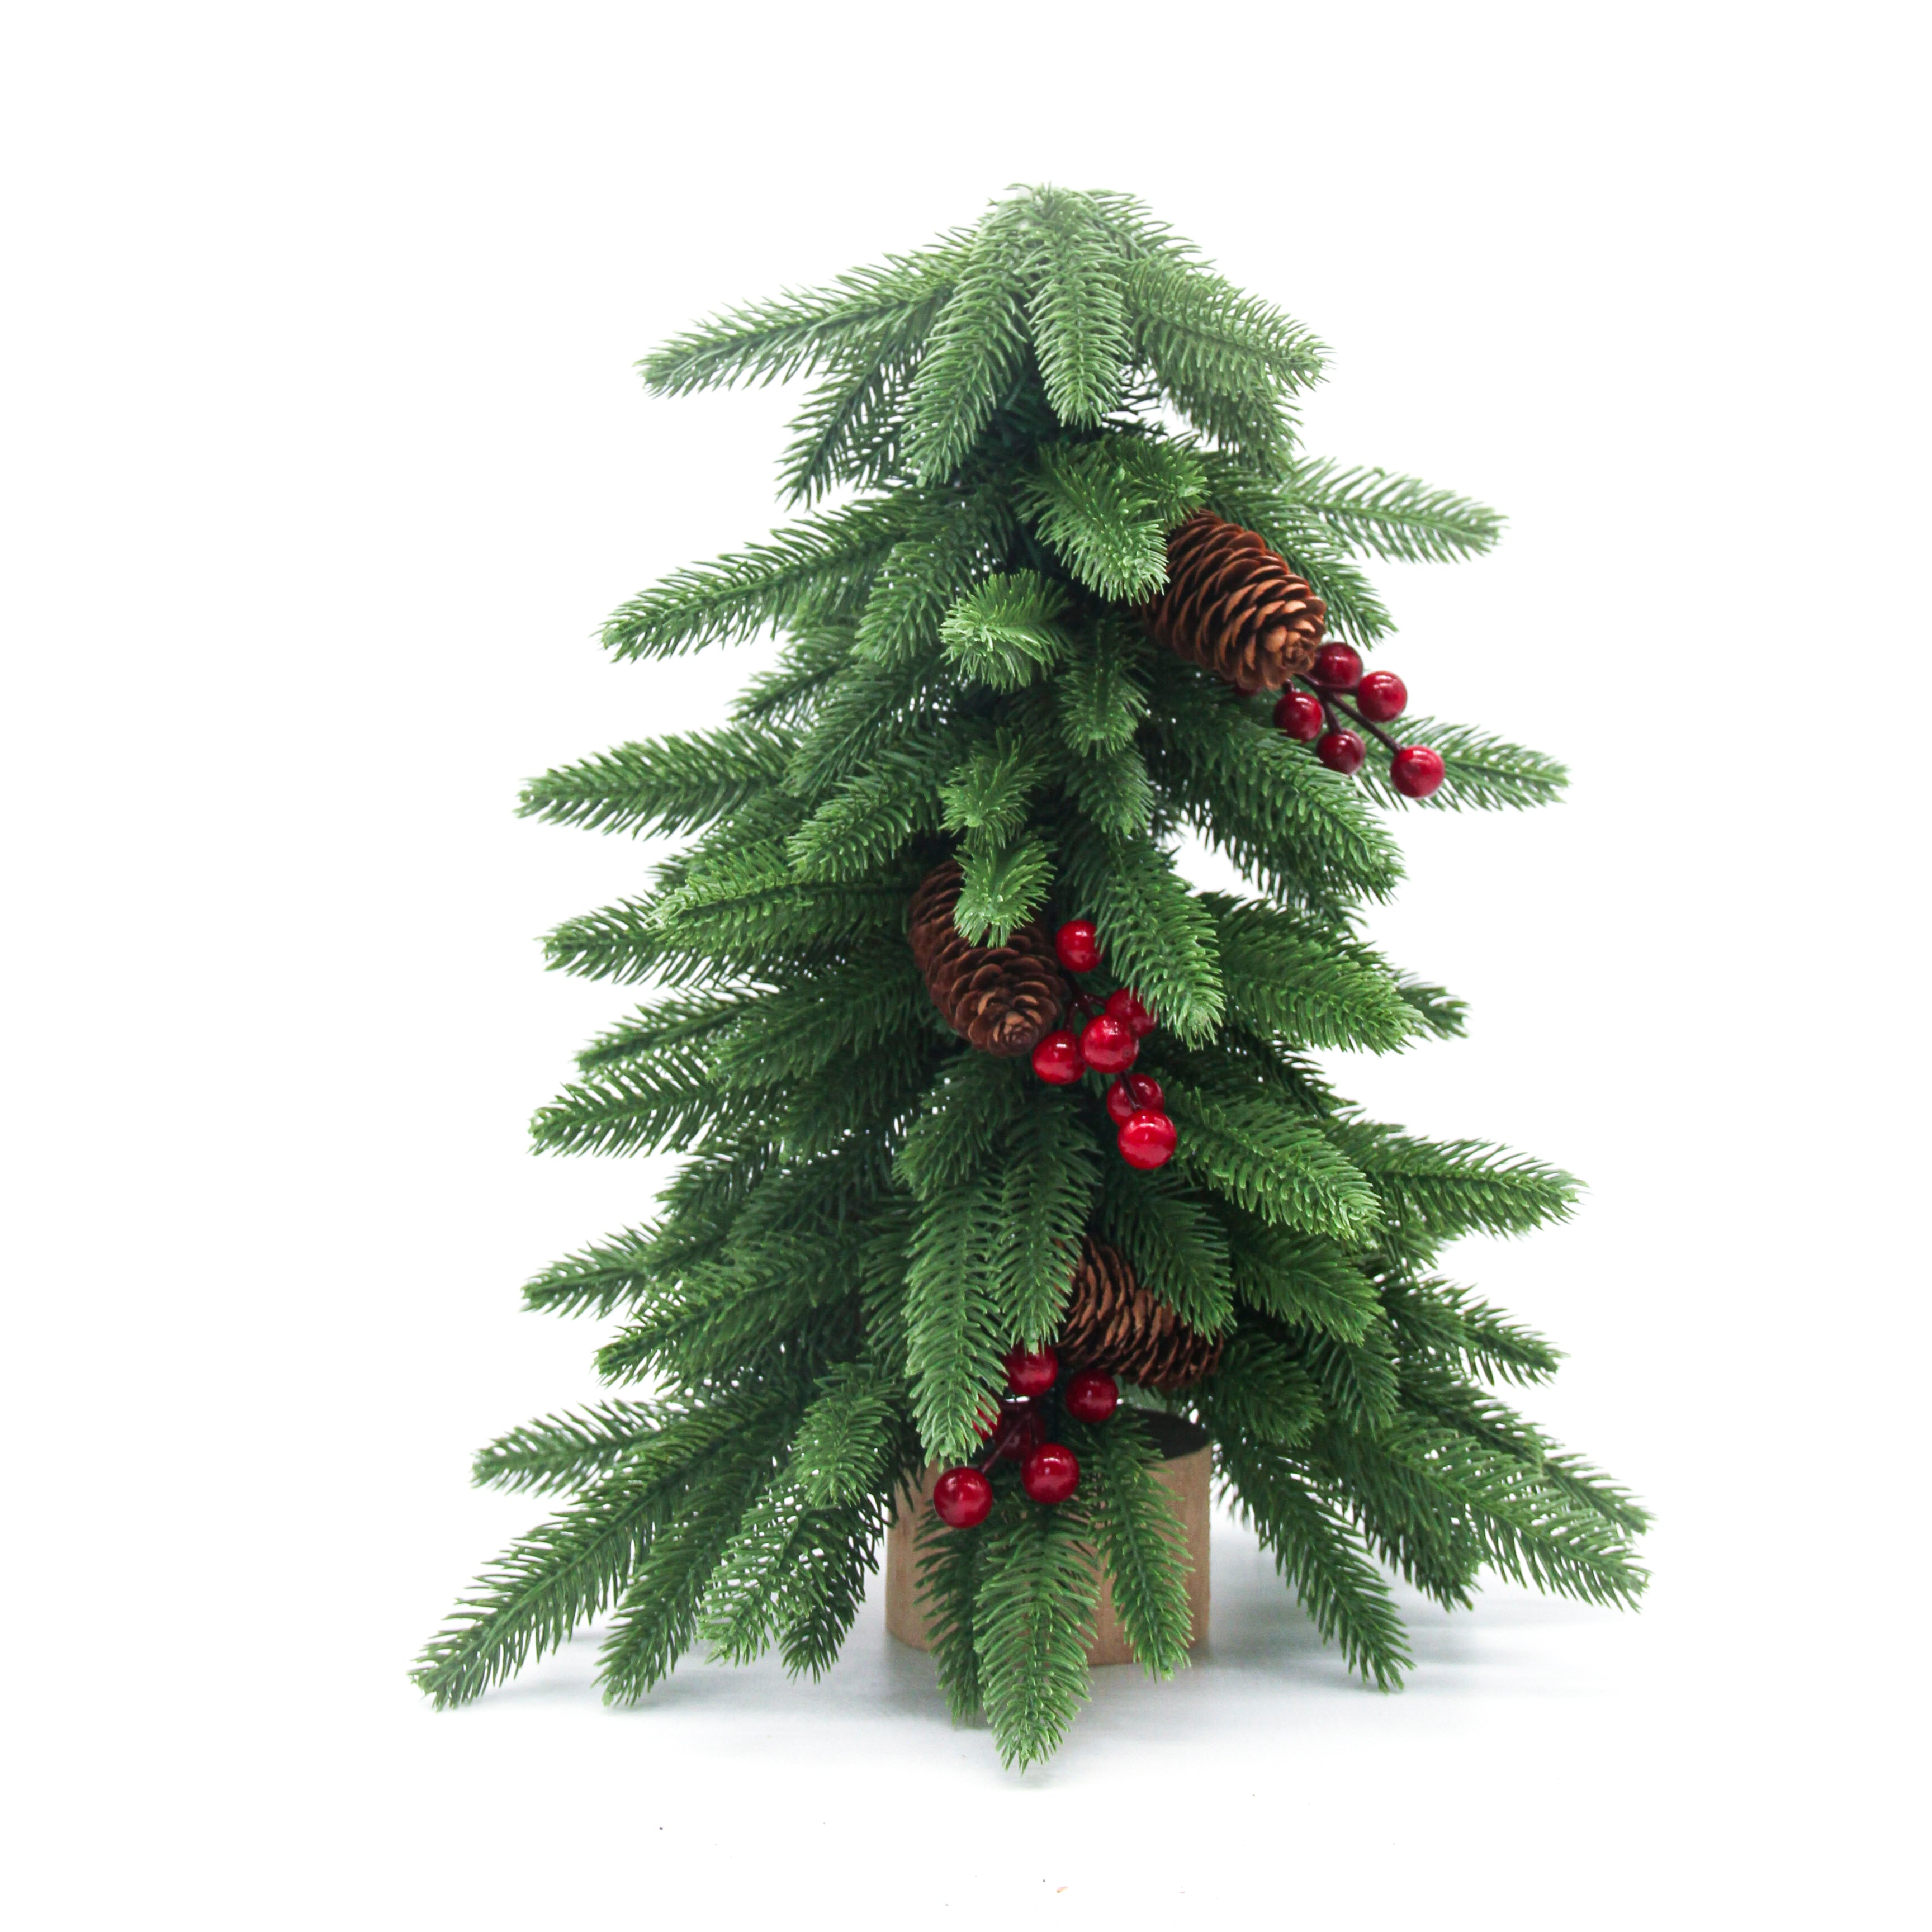 40cm Classic Handmade Artificial Christmas Tree